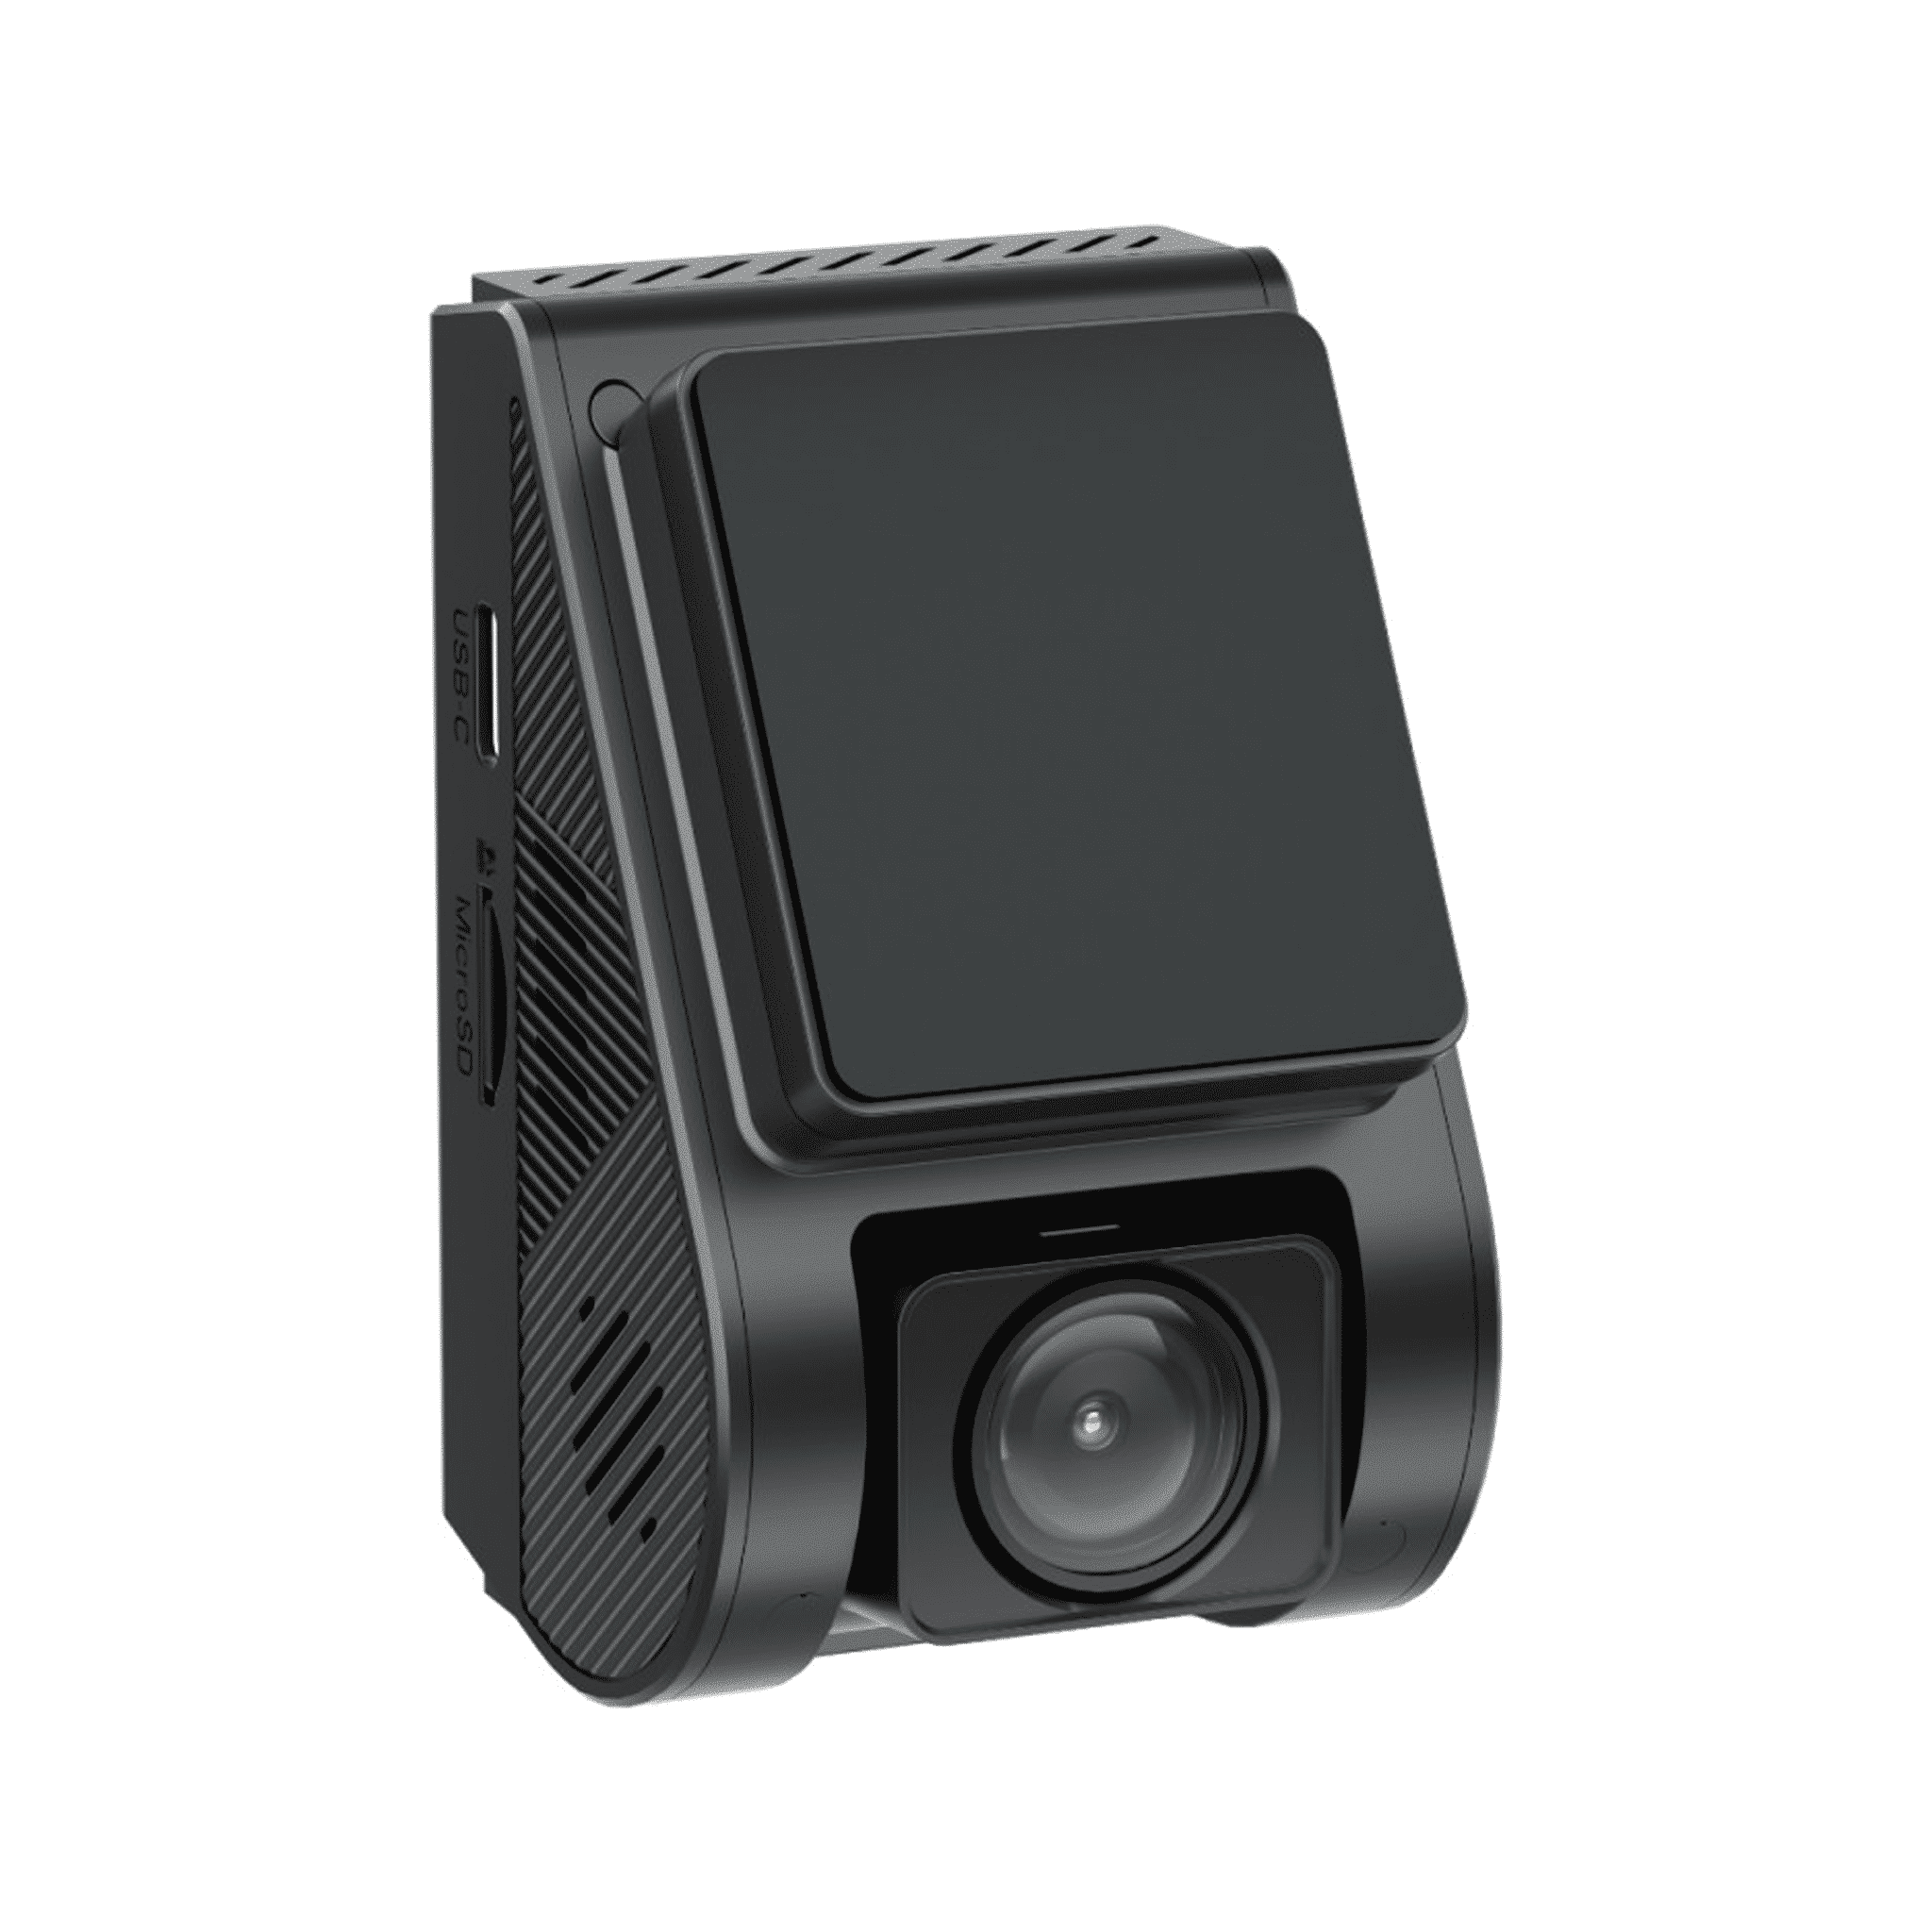 VIOFO A119 MINI 2 1440p Araç Kamerası